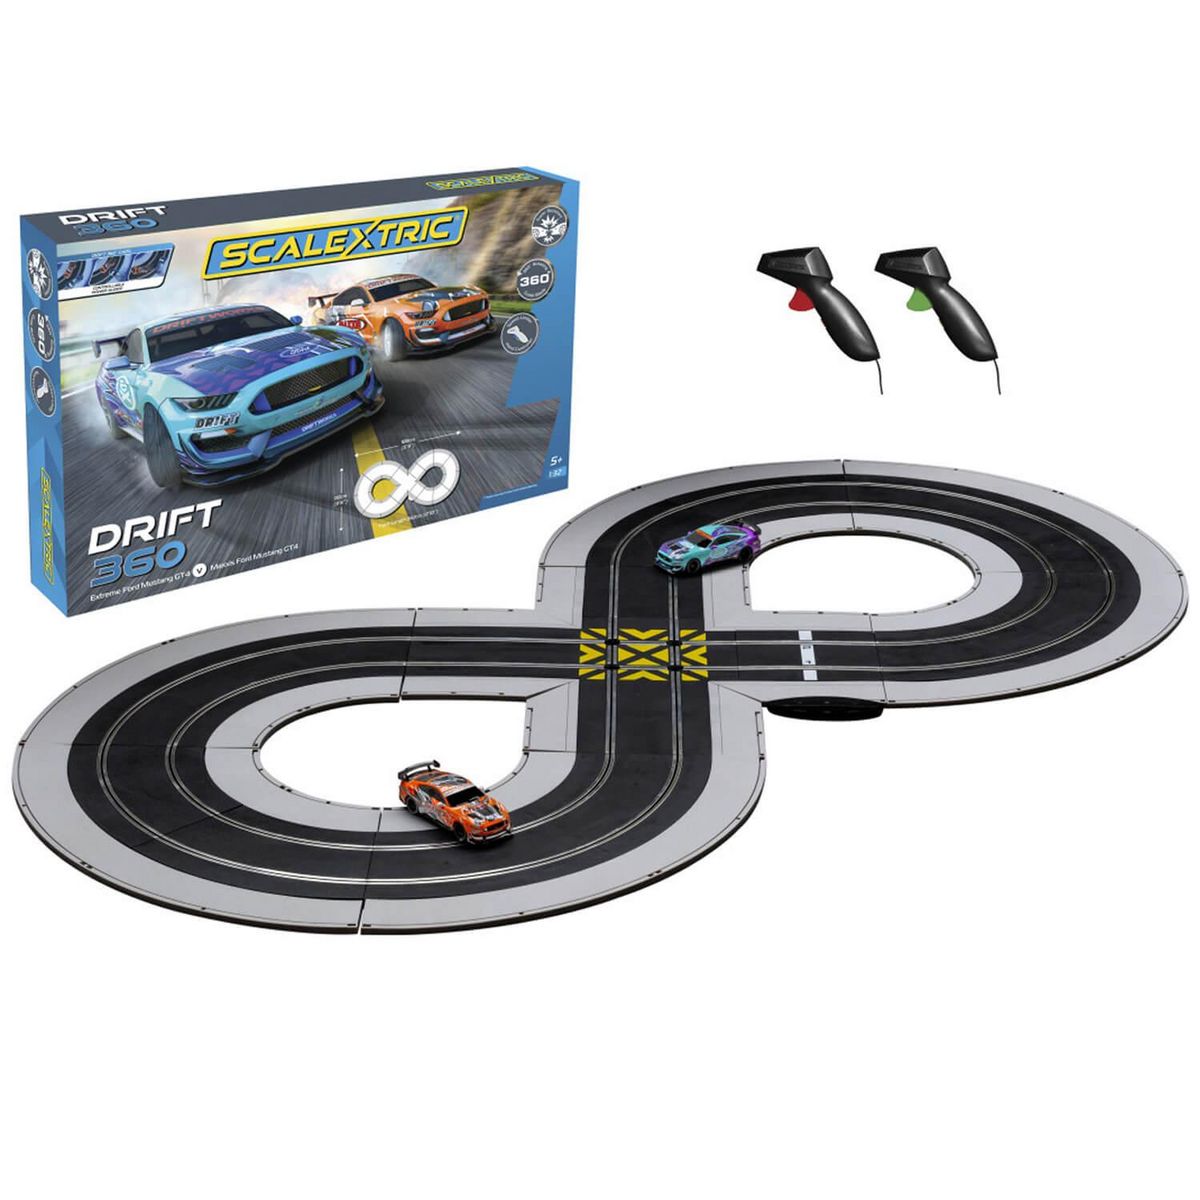 Scalextric Circuit de voitures : Drift 360 Race